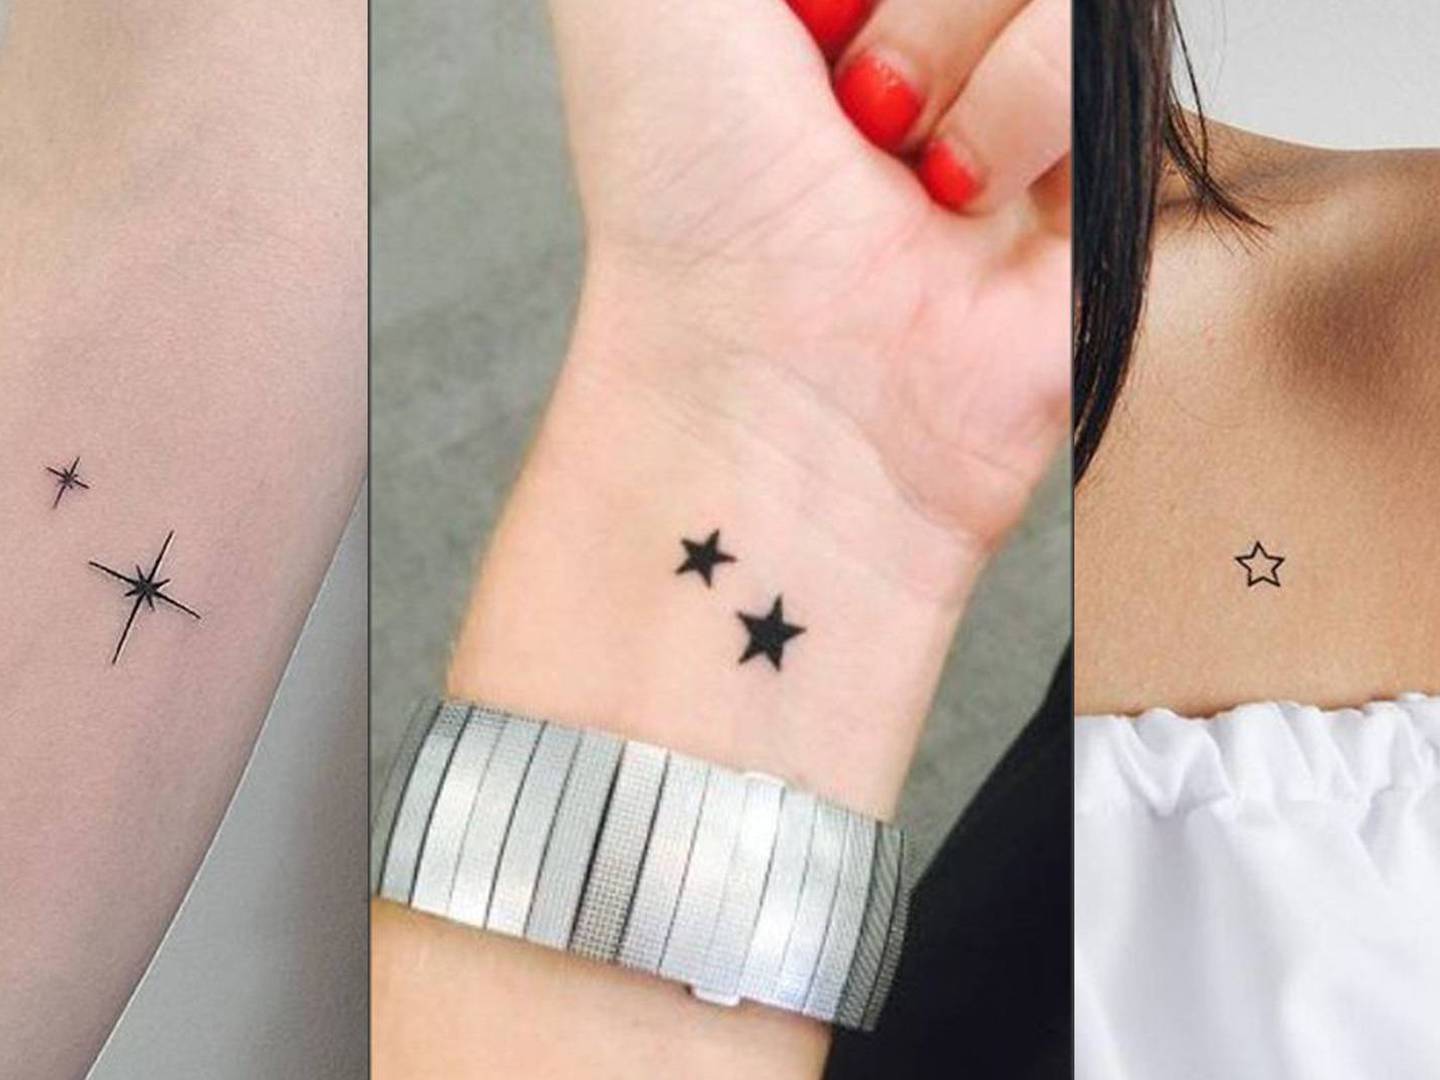 Tatuajes de estrellas para mujeres fuertes que brillan ante la oscuridad